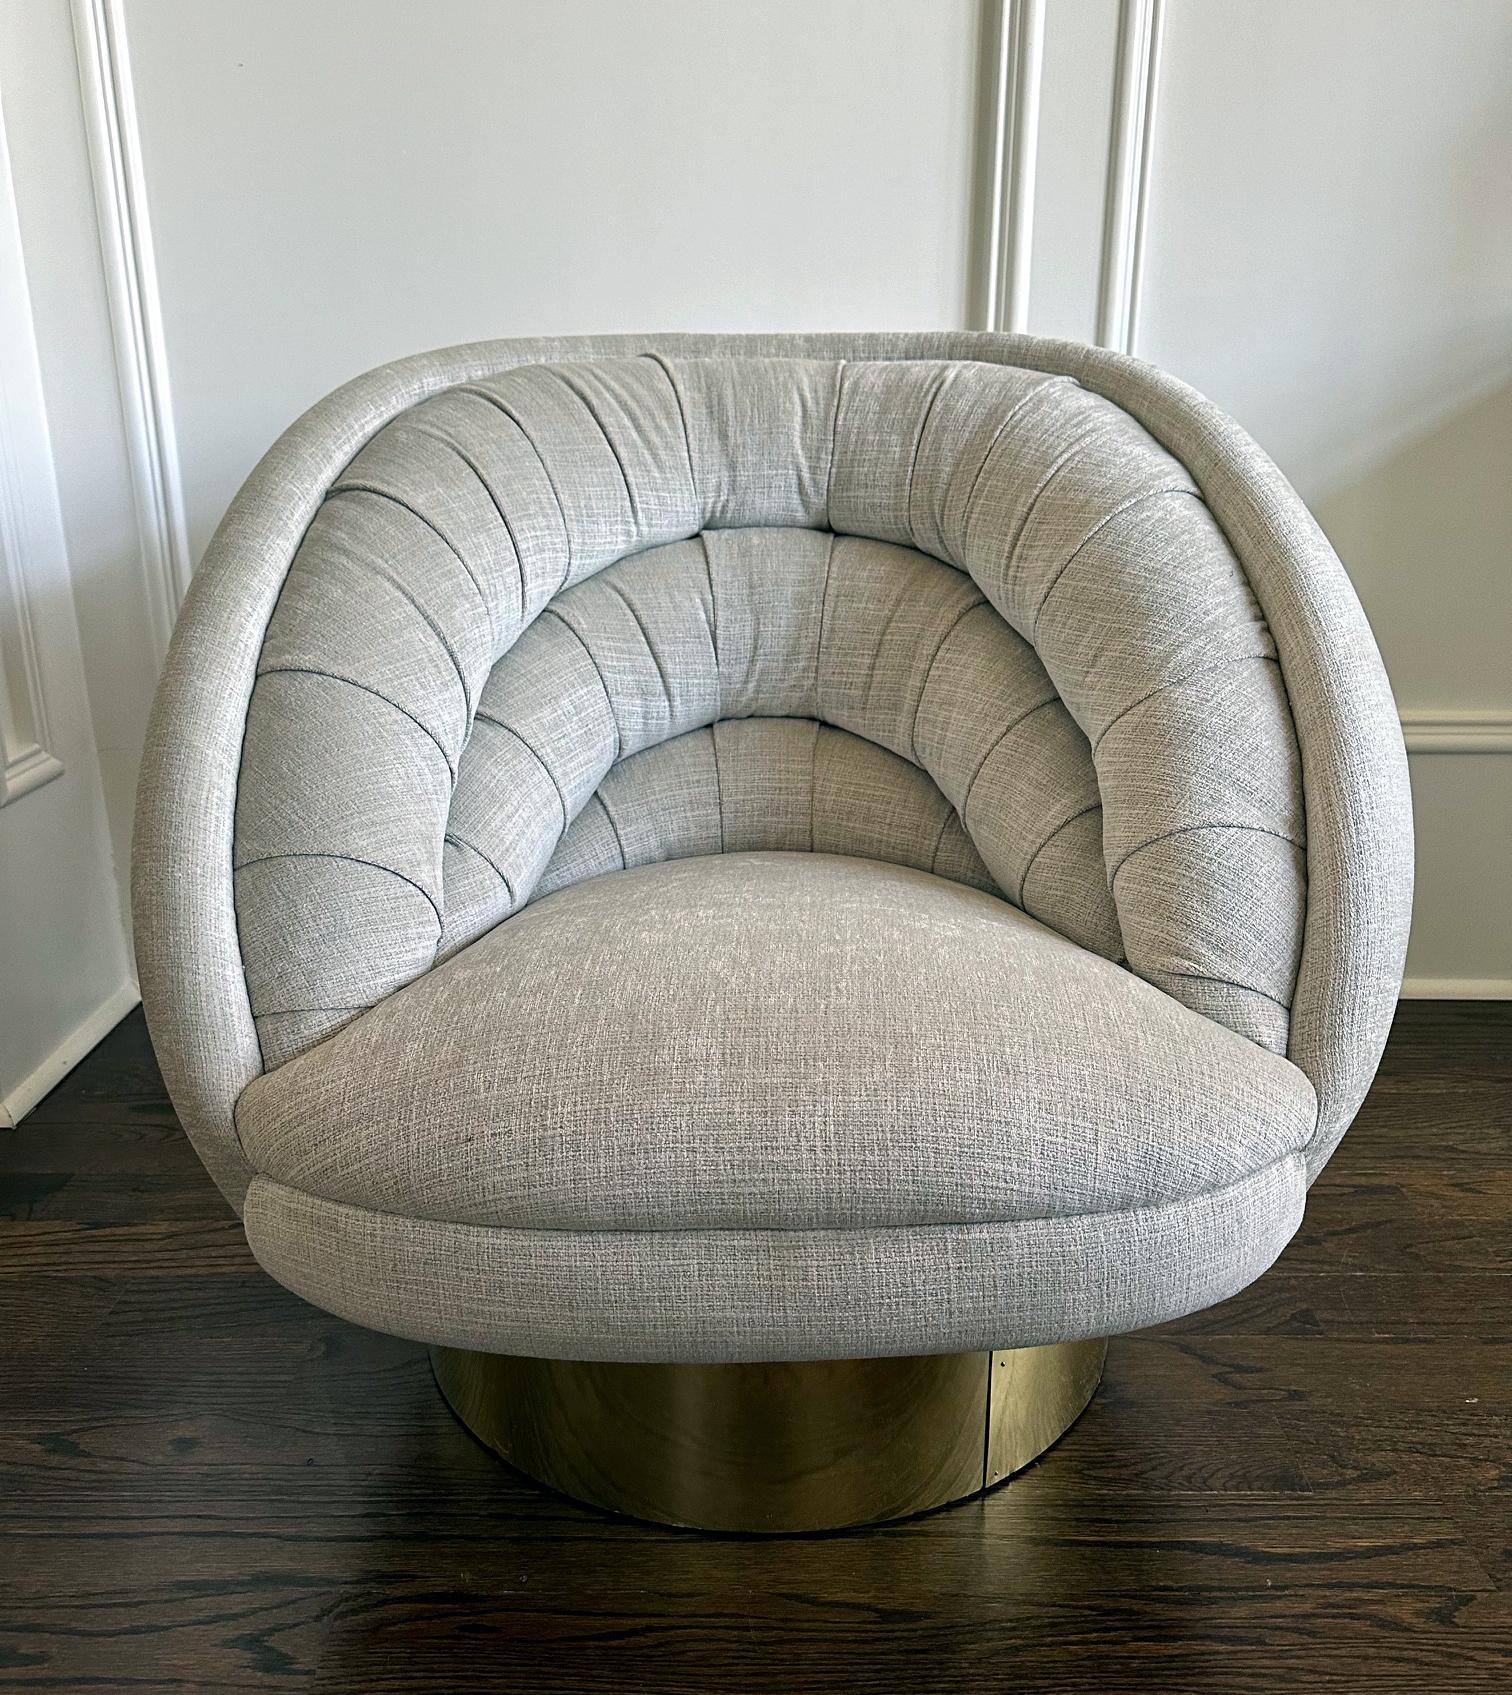 Ein glamouröser Lounge-Drehsessel, entworfen und hergestellt von Vladimir Kagan (1927-2016) um 1970-80er Jahre. Das als Ellipse oder Crescent Chair bekannte Modell wurde 1976 von Vladimir Kagan entworfen. Der angebotene Stuhl verfügt über ein